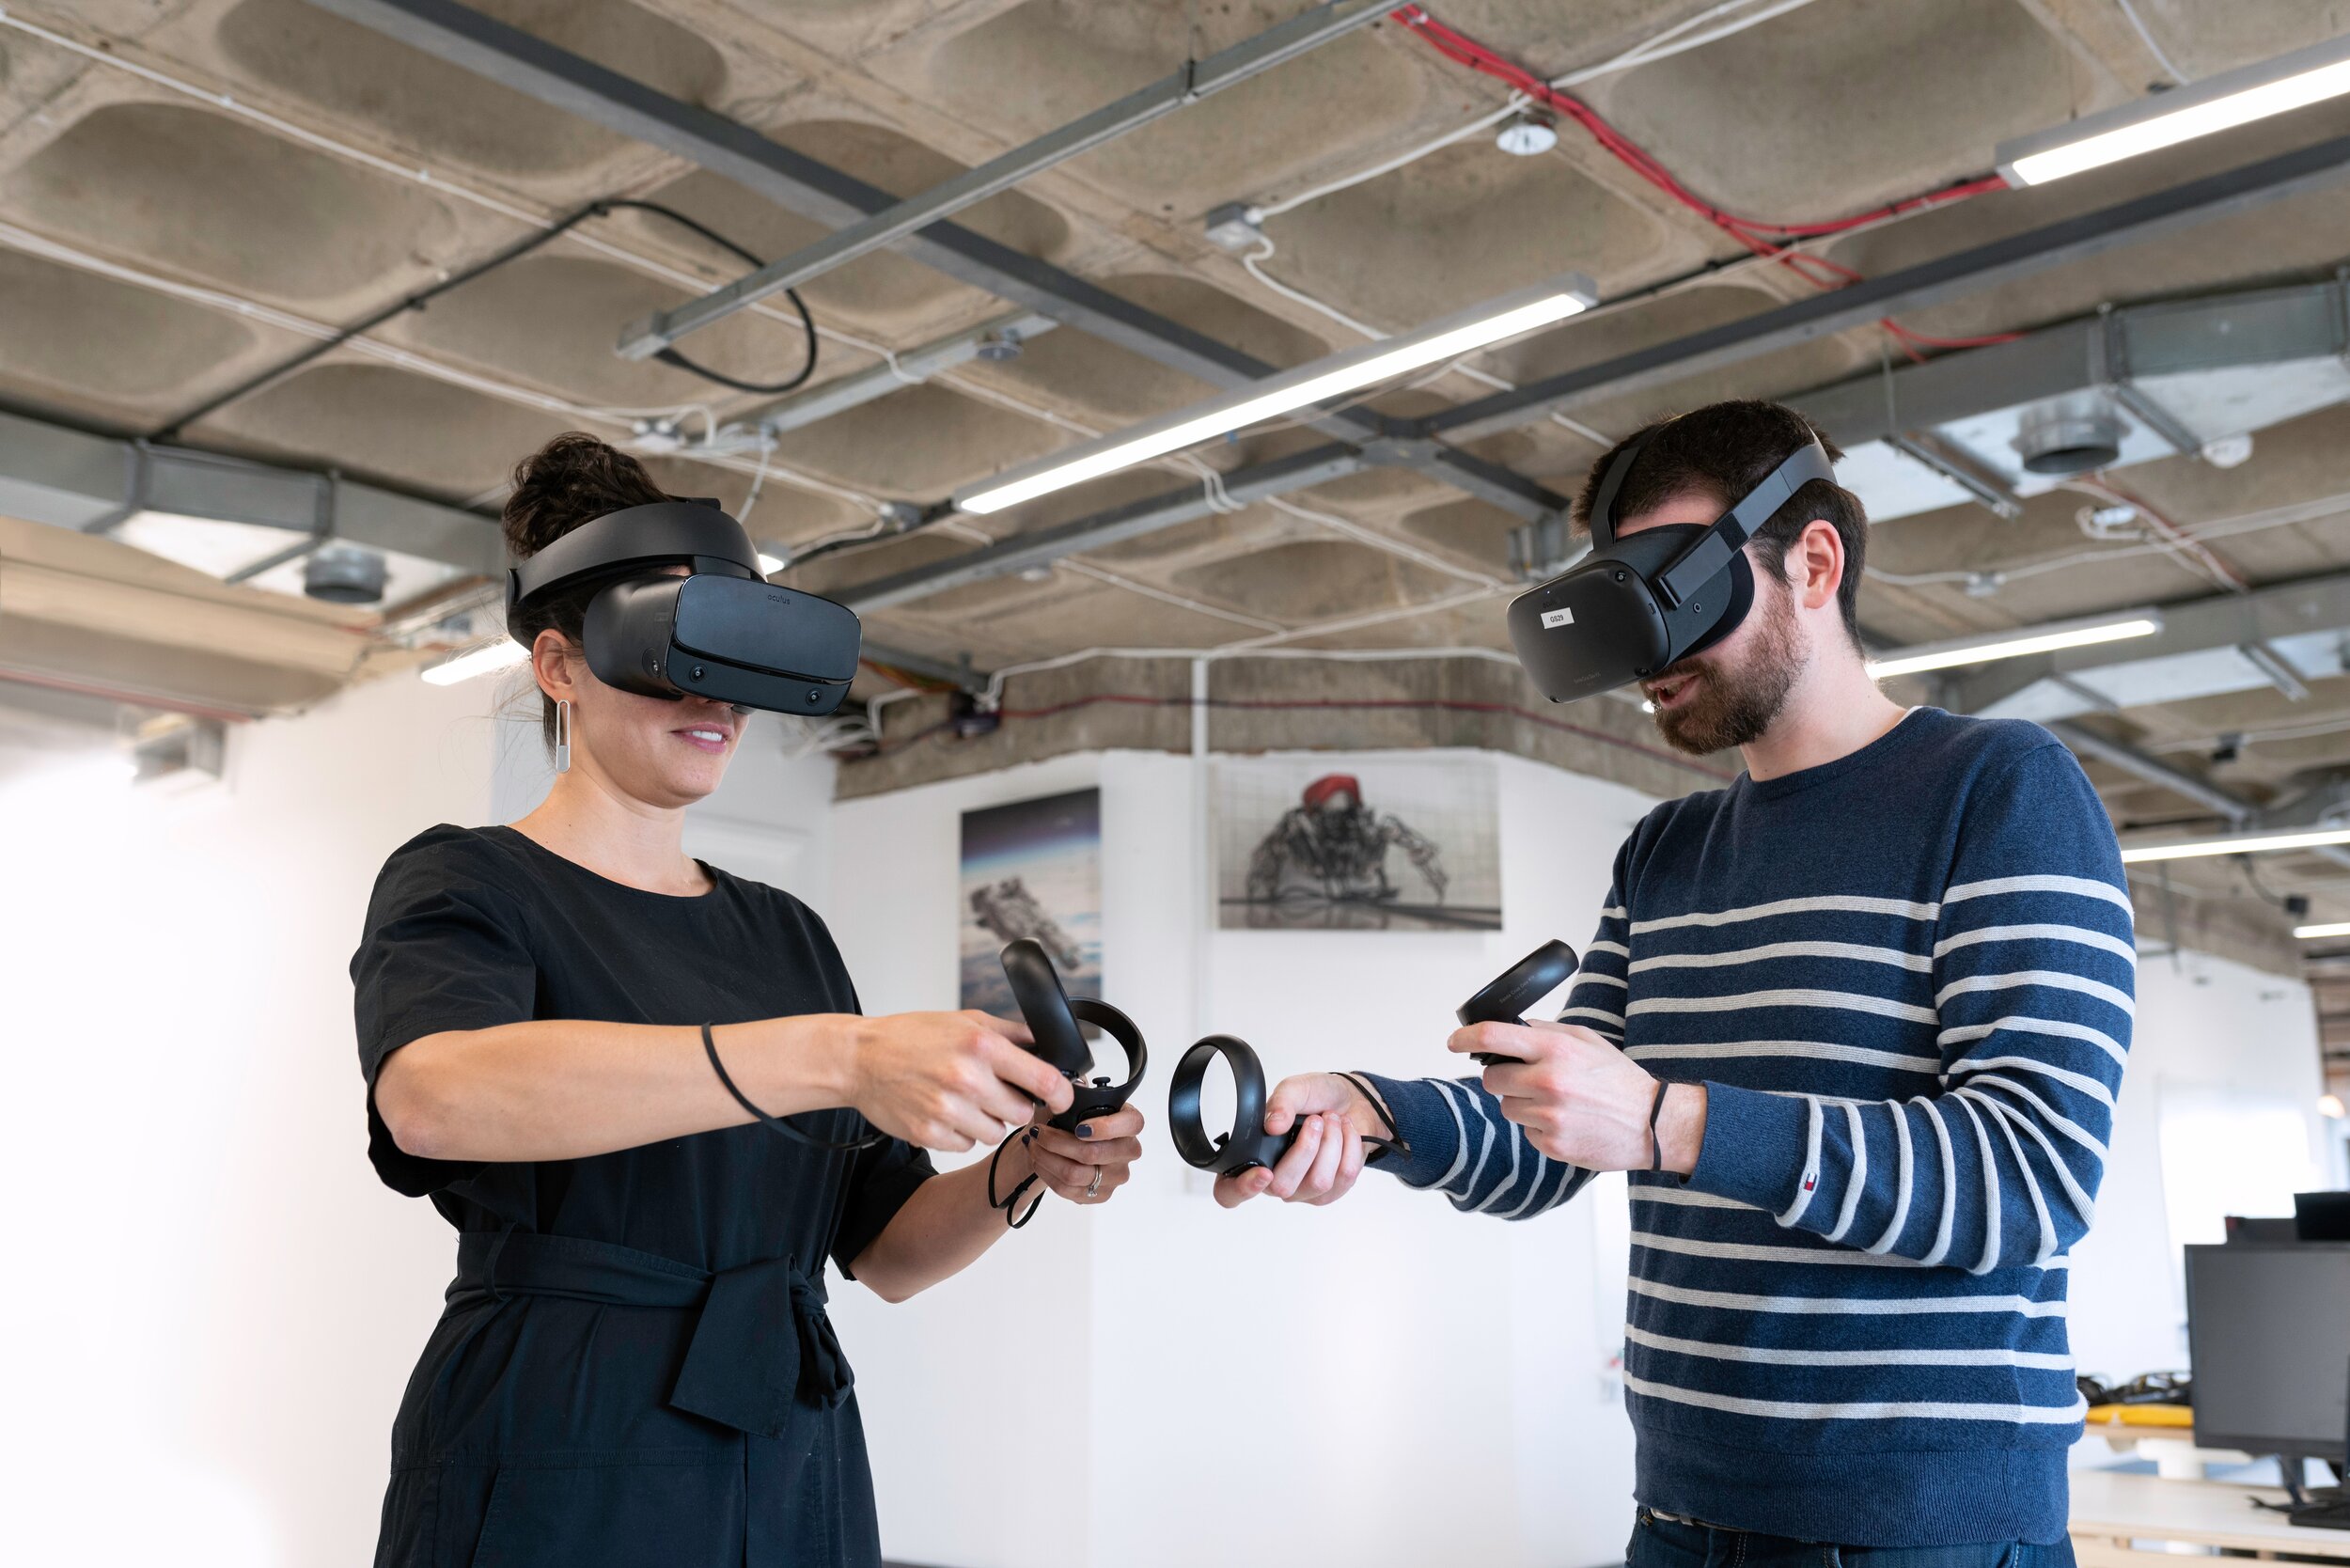 Vr ярославль. Технологии виртуальной реальности. Технологии виртуальной и дополненной реальности. Очки виртуальной реальности в промышленности. VR реальность.